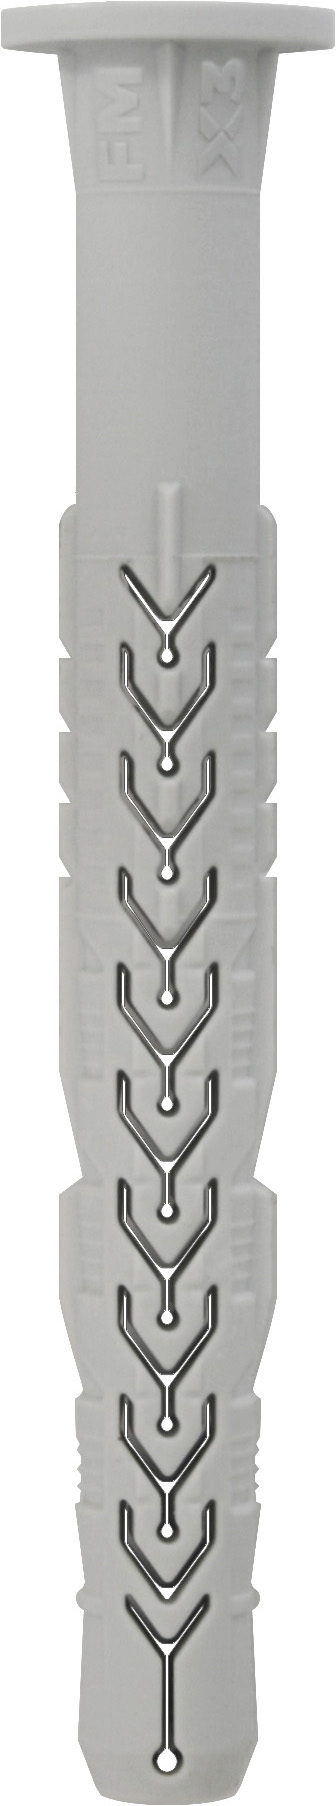 X3 Tassello prolungato c/bordocilindrico